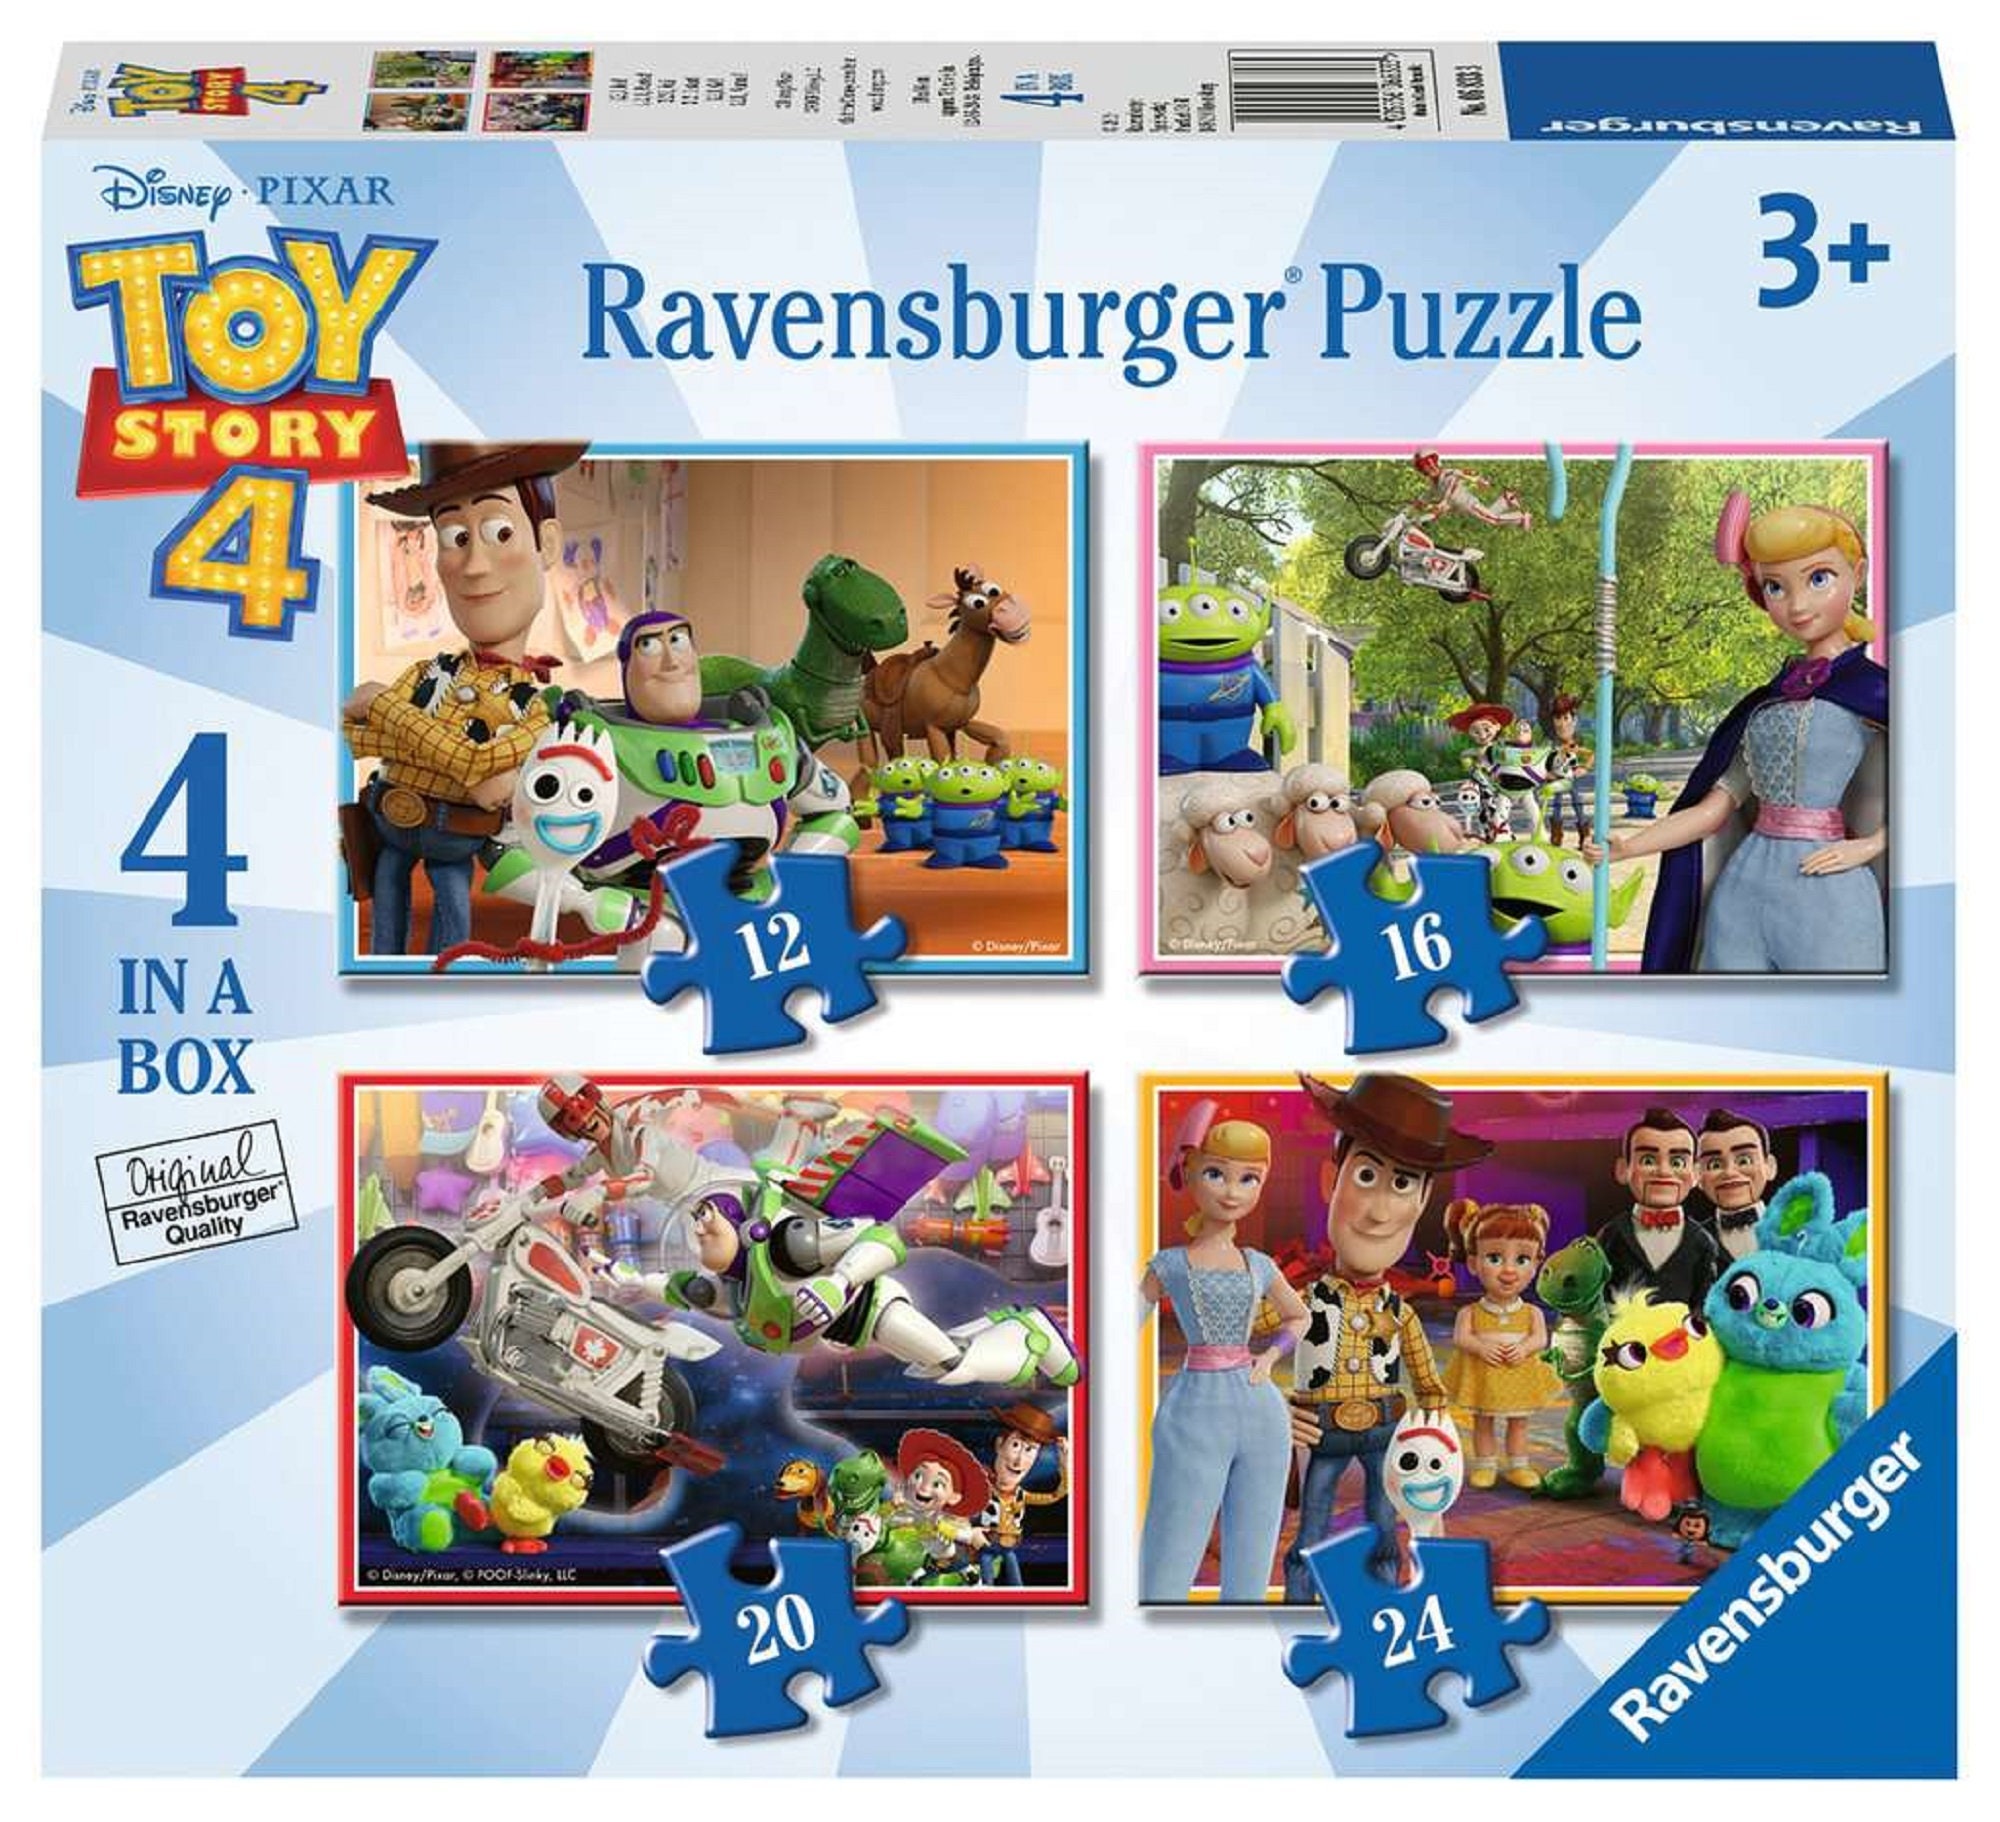 7 PUZZLE SET) Disney Toy Story 4 Jigsaw Puzzles- W/ Wood Storage Box - NEW